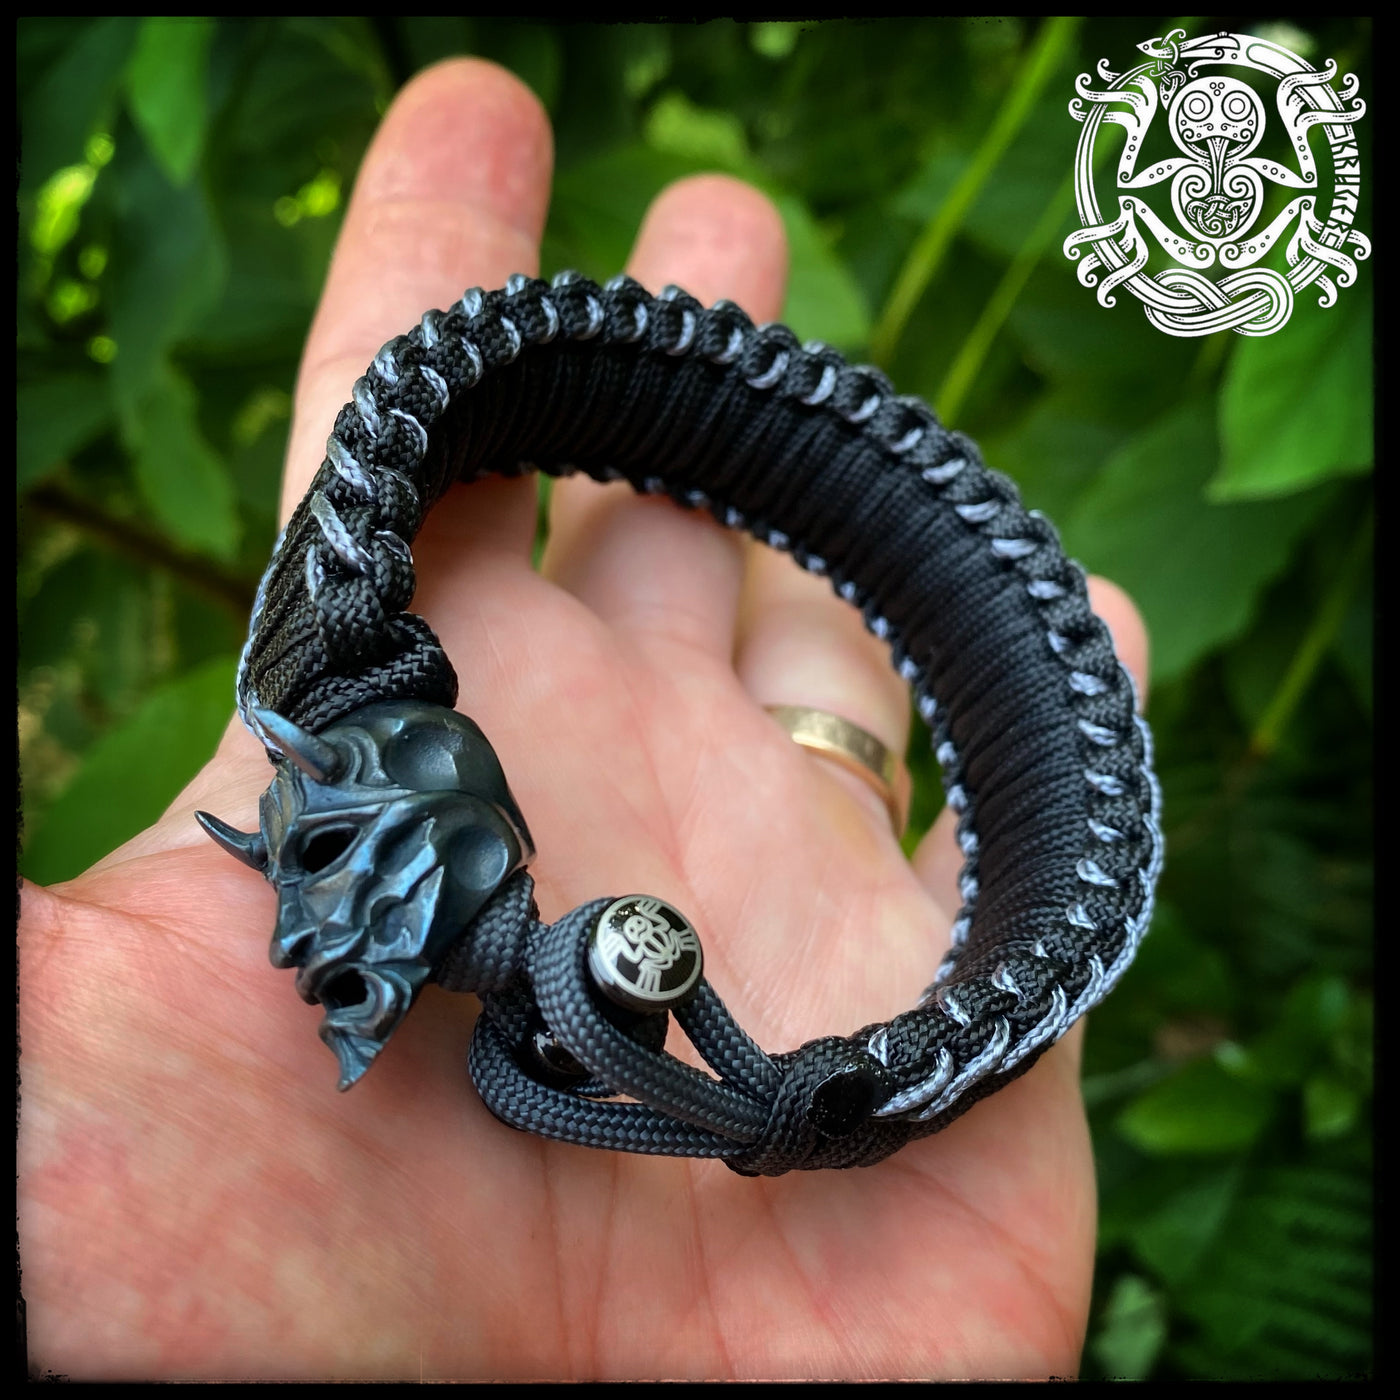 The Black Oni bracelet